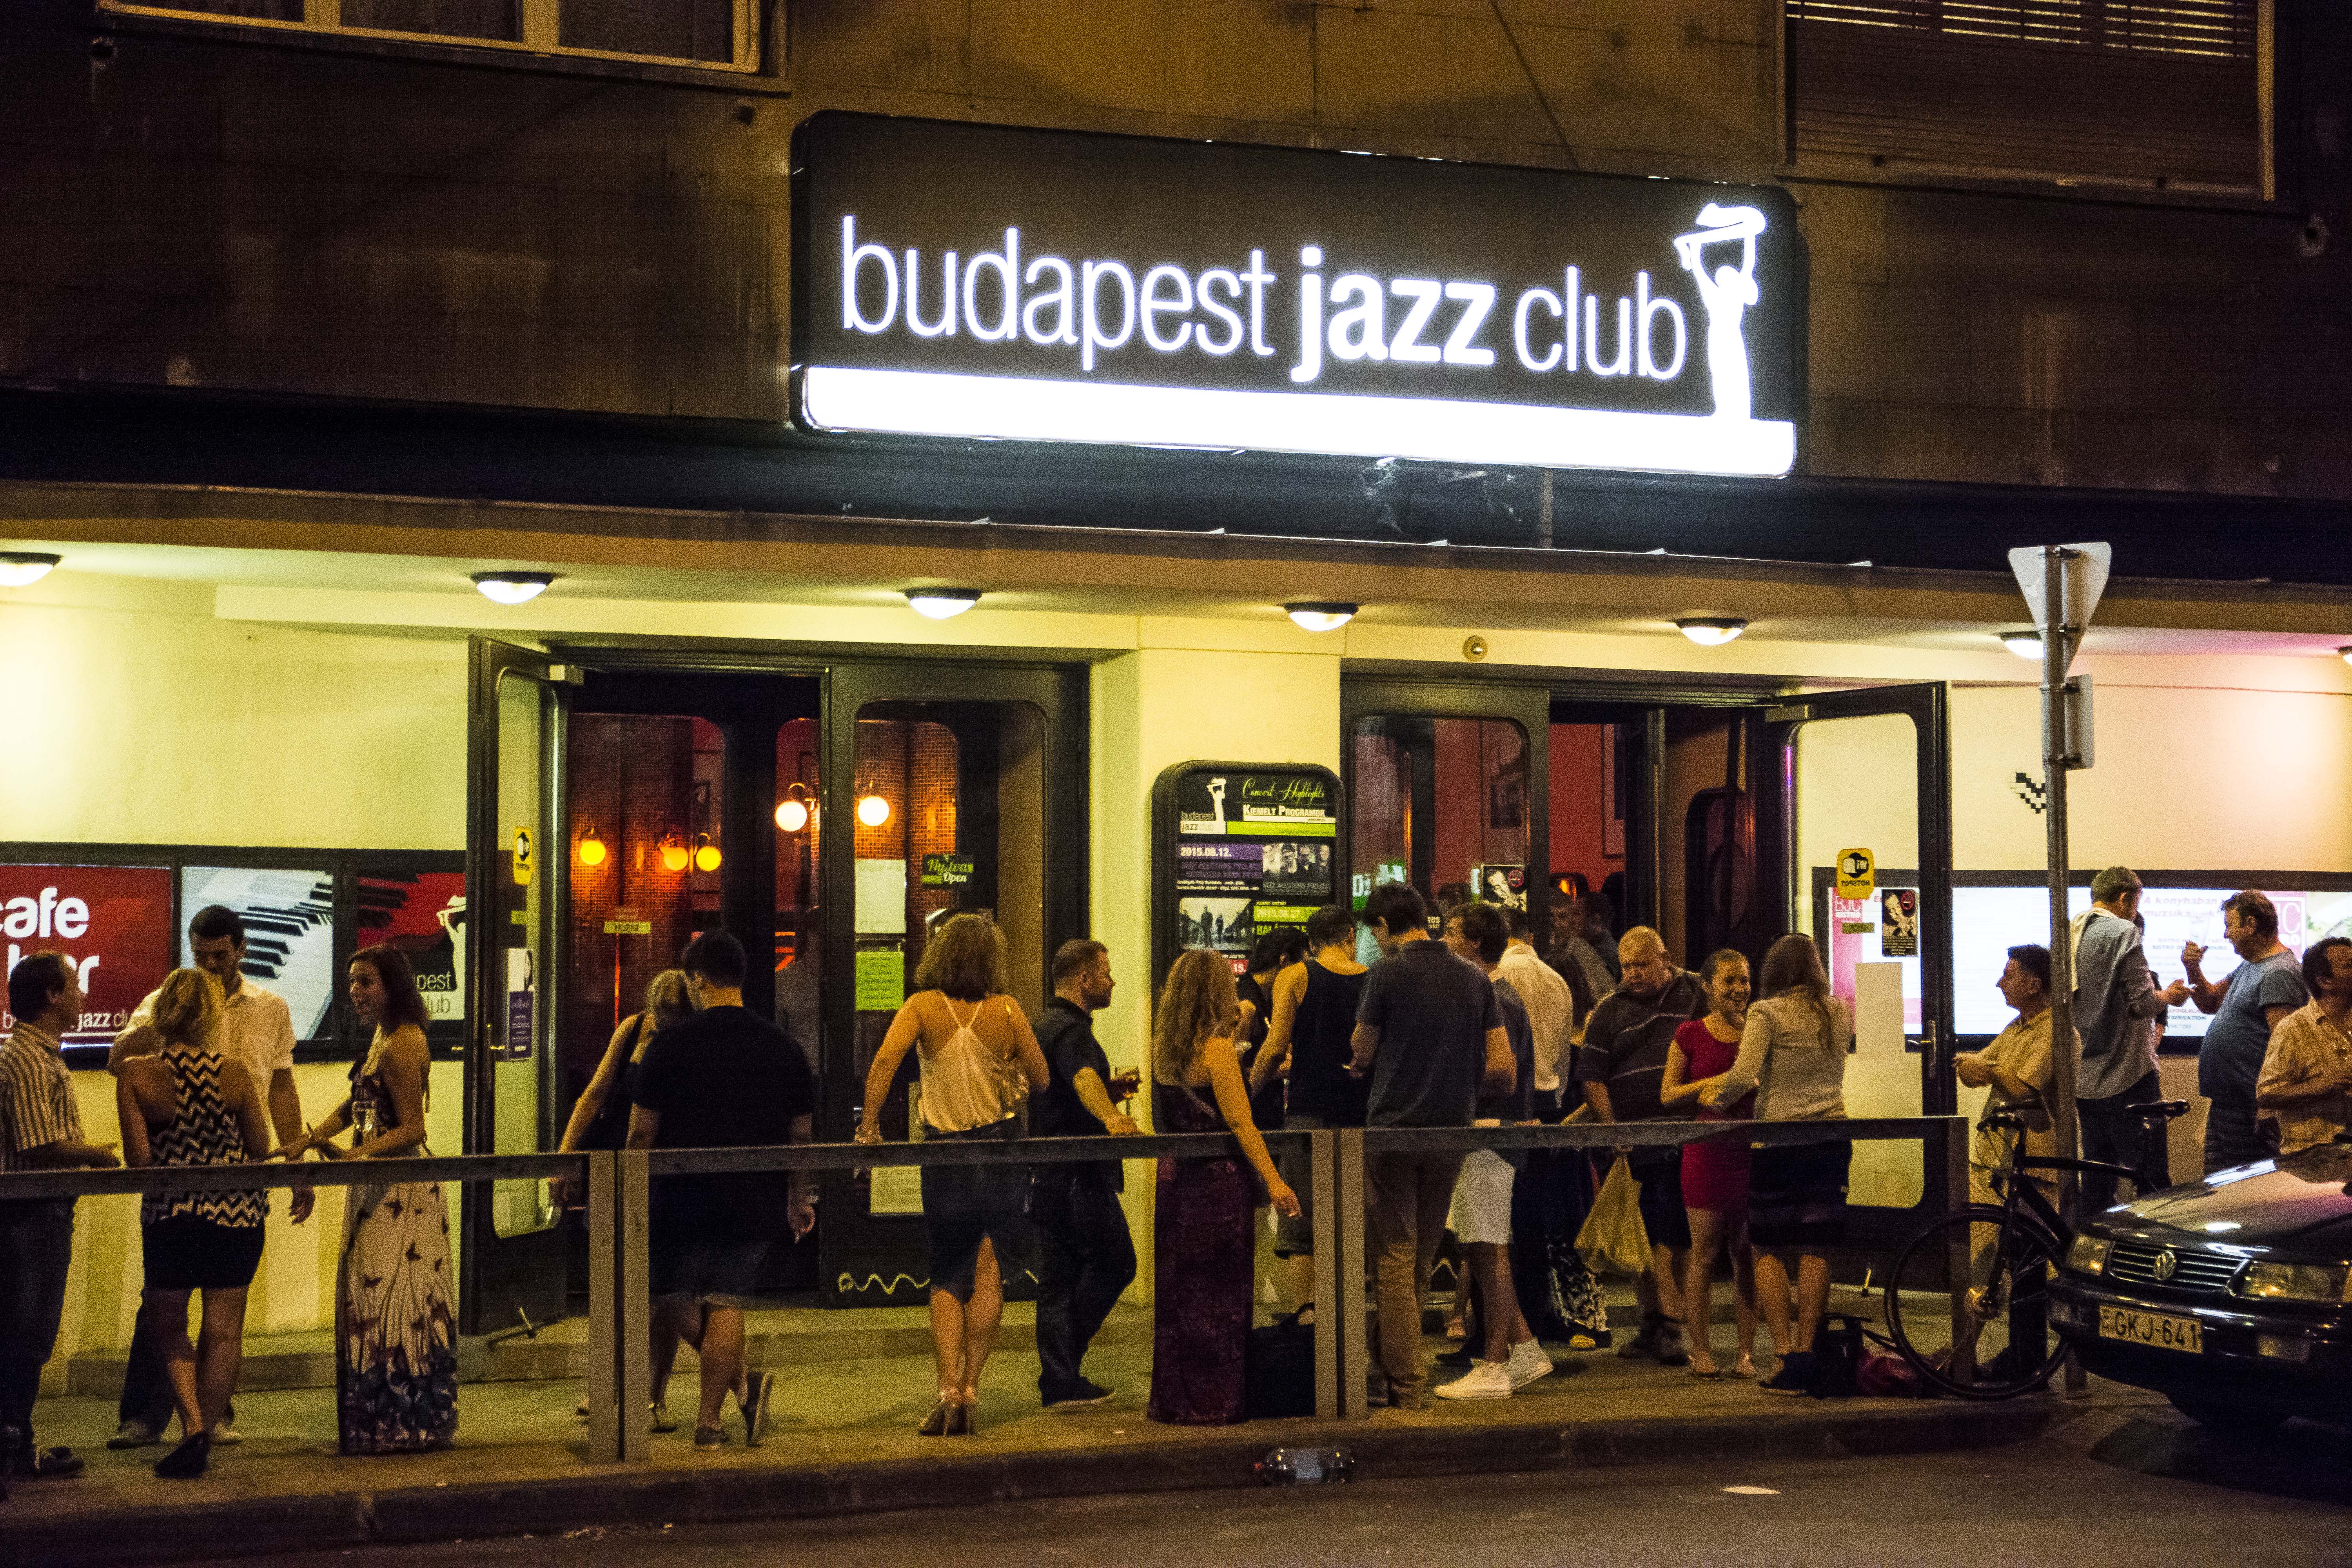 Bezár a Budapest Jazz Club a magas költségek miatt